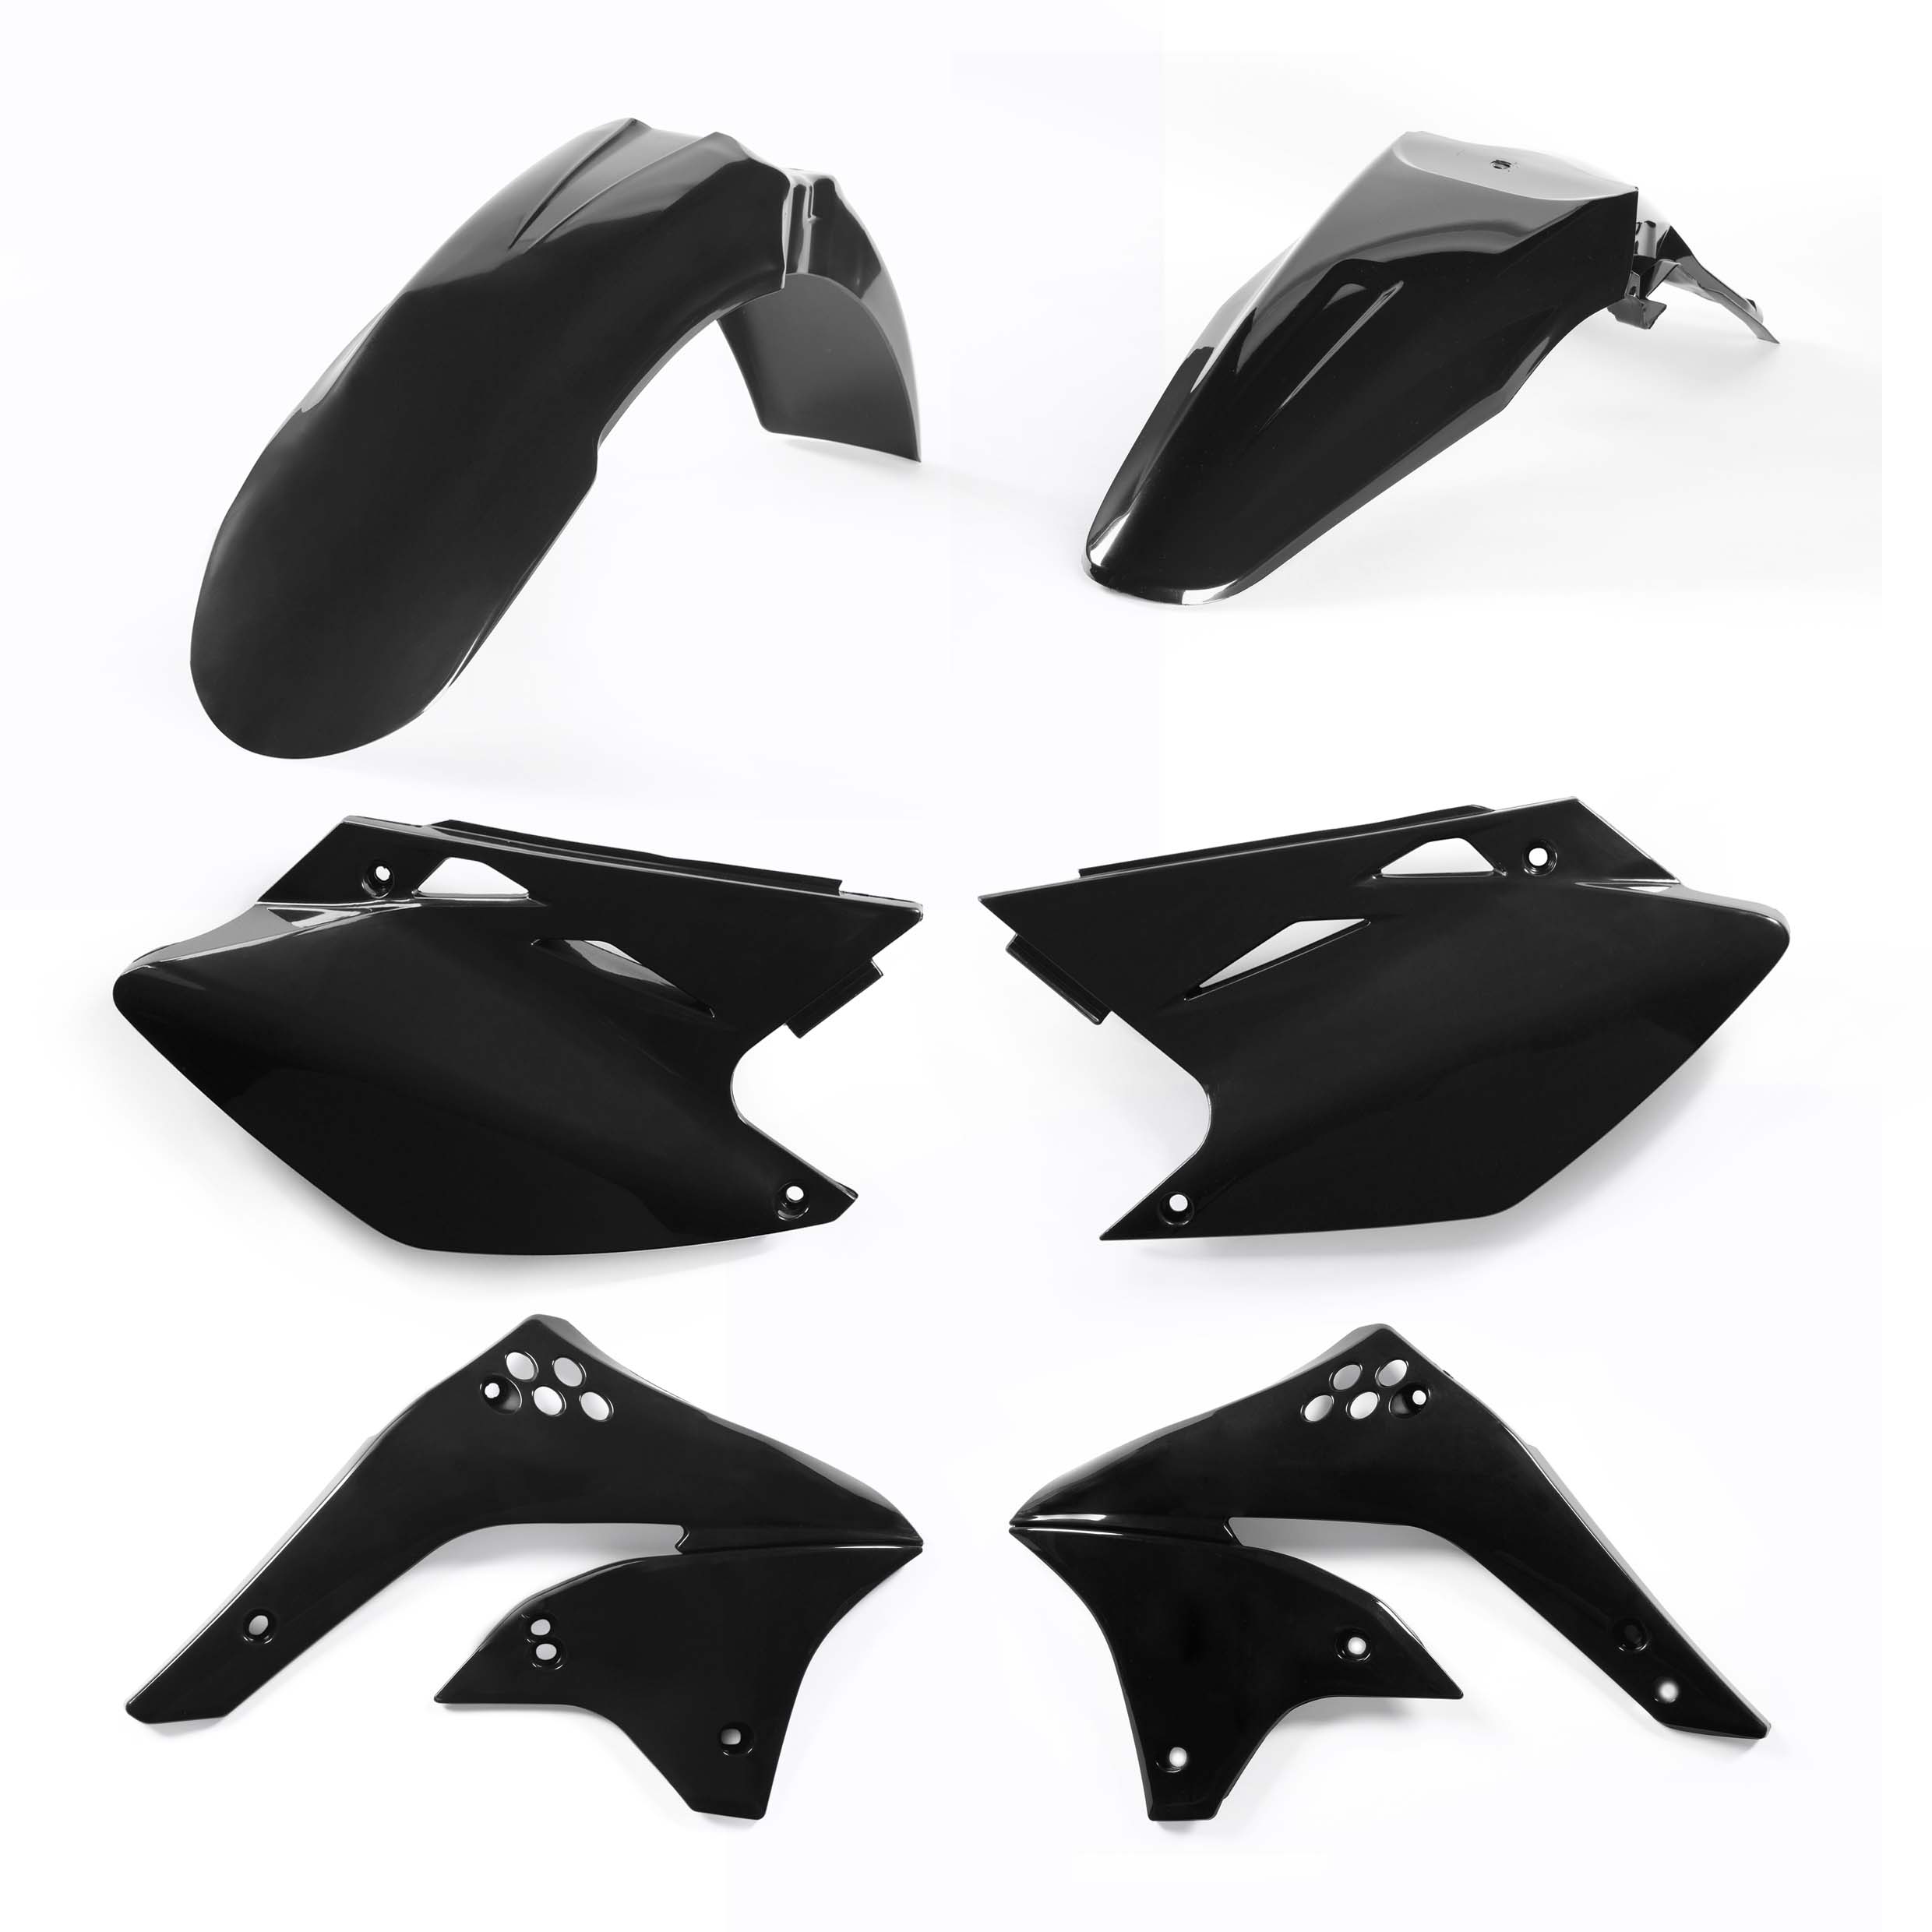 Plastikteile für deine Kawasaki KX 450 in schwarz bestehend aus Kotflügel vorn Kotflügel hinten Kühlerspoiler Seitenteile